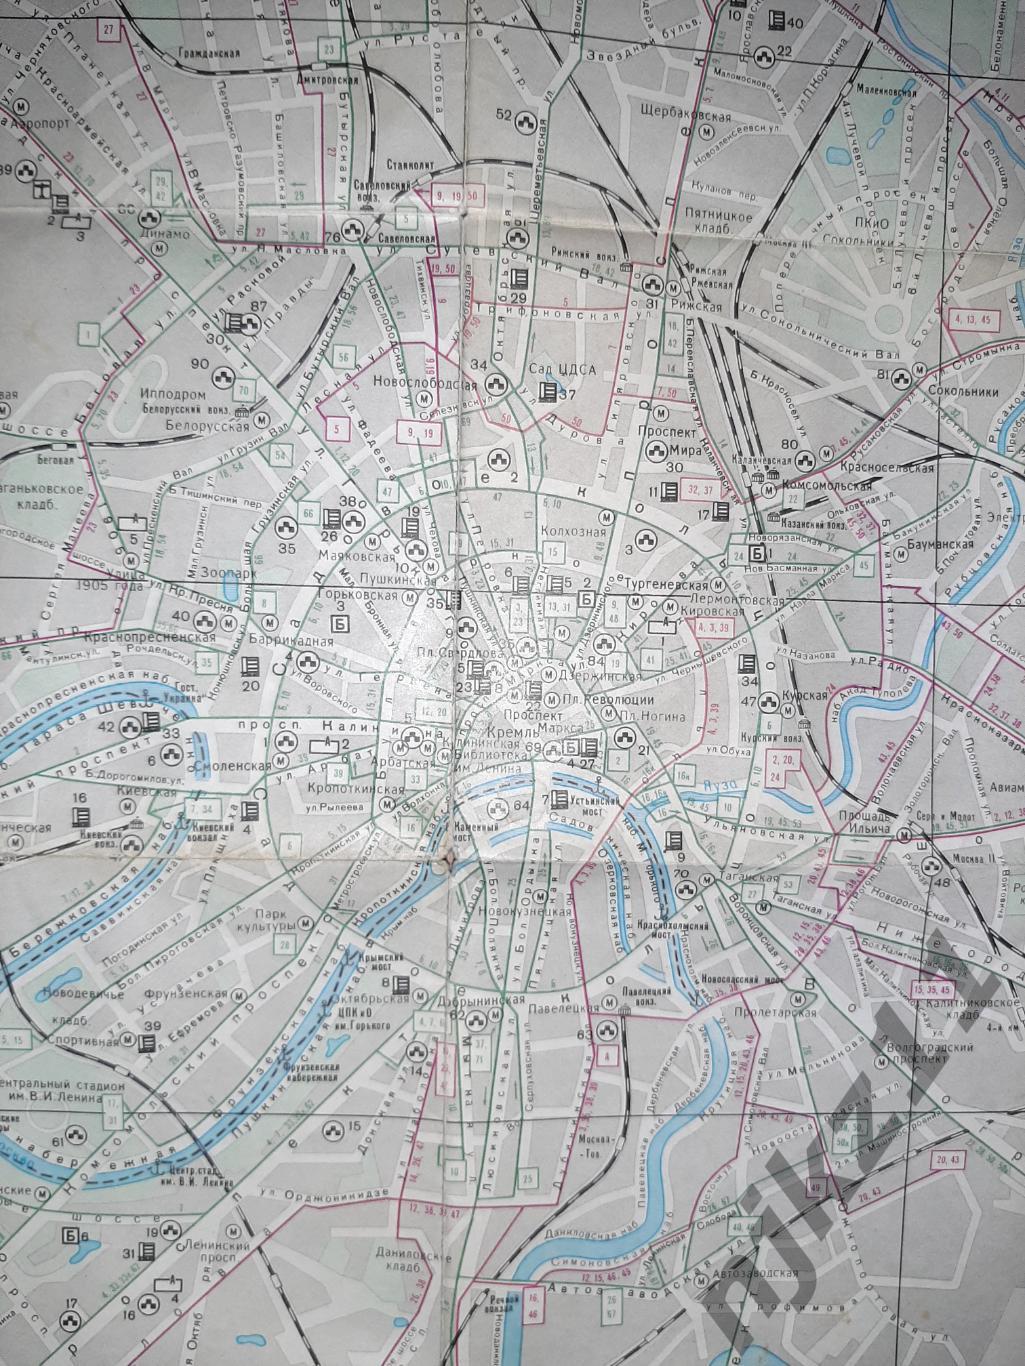 Карта Москва 1980+Зеленоград+схема движения пассажирского транспорта 79-80г.г. 7